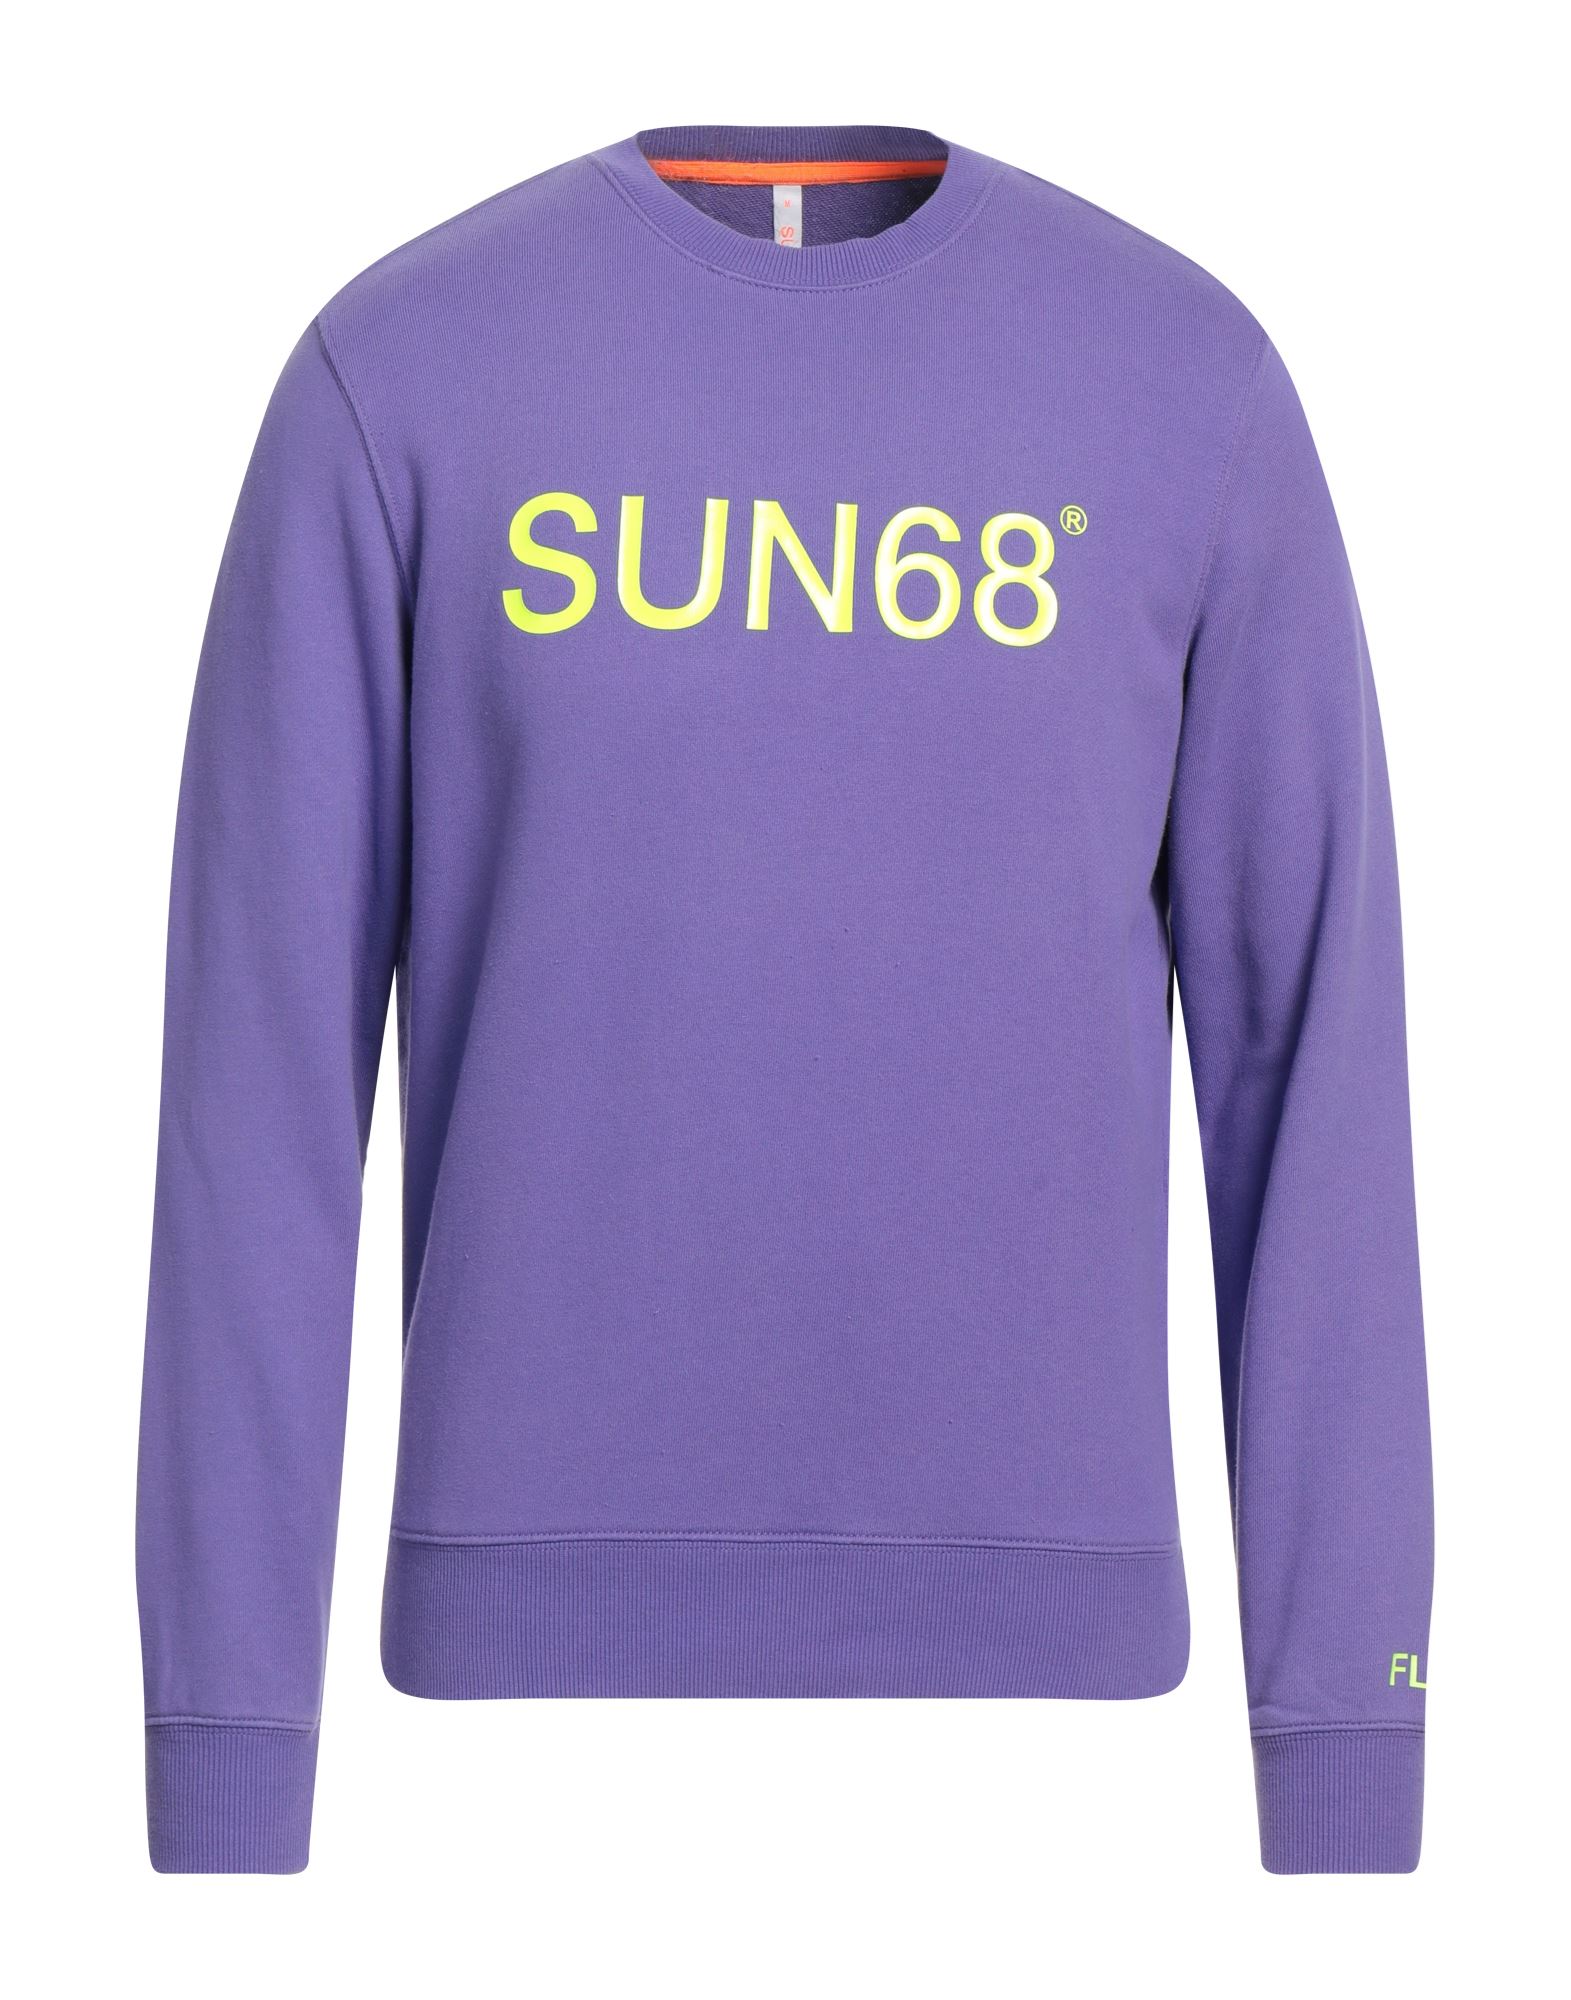 SUN 68 Sweatshirt Herren Violett von SUN 68